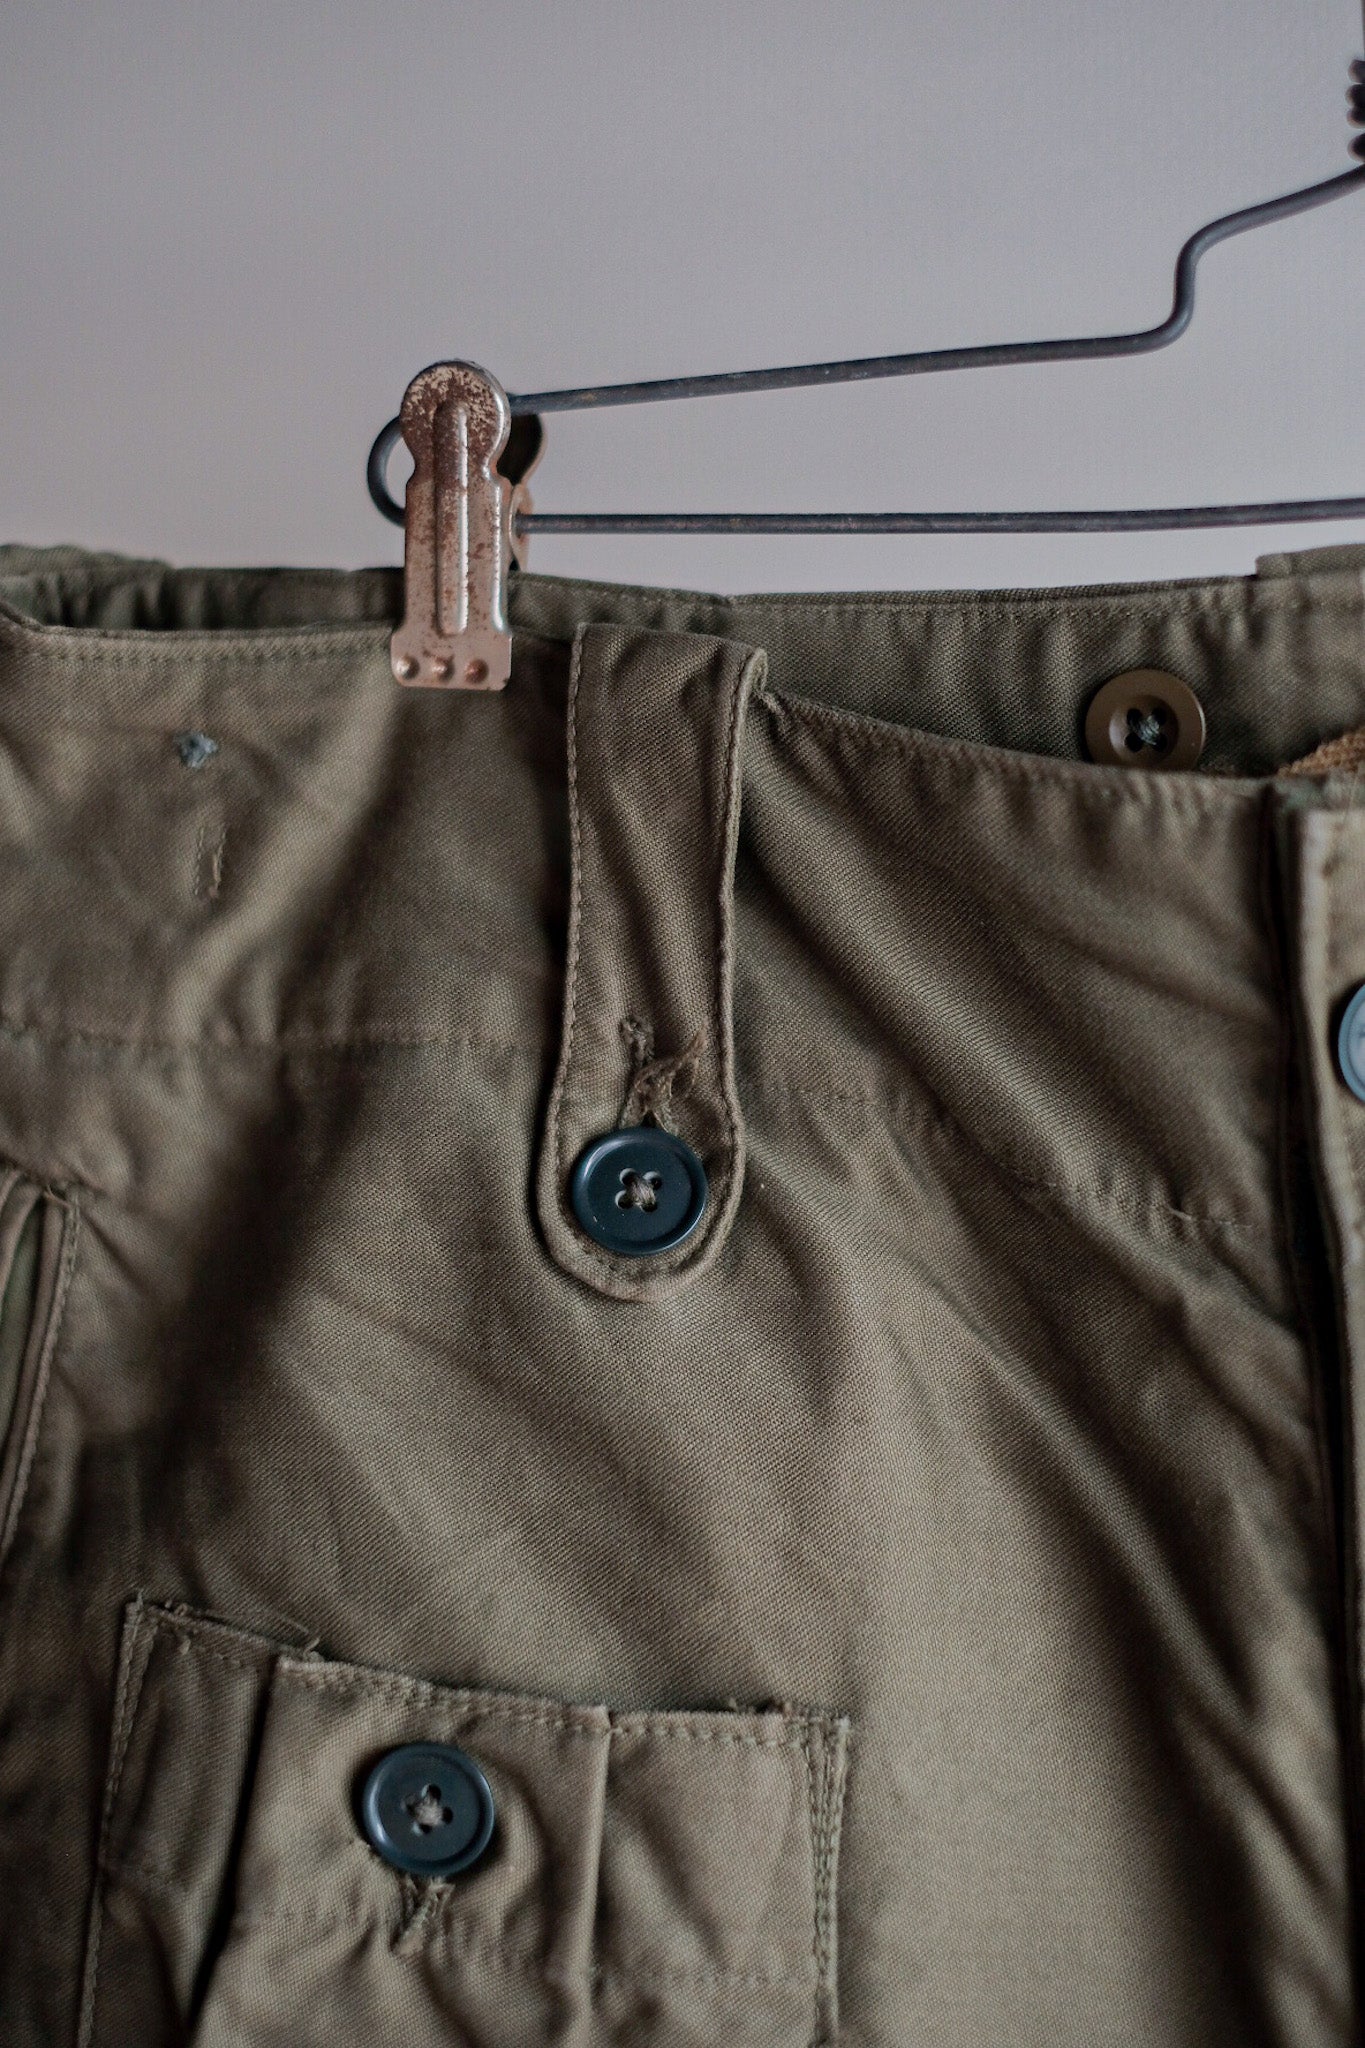 [〜60年代]英國軍隊1960年的圖案戰鬥褲尺寸。5